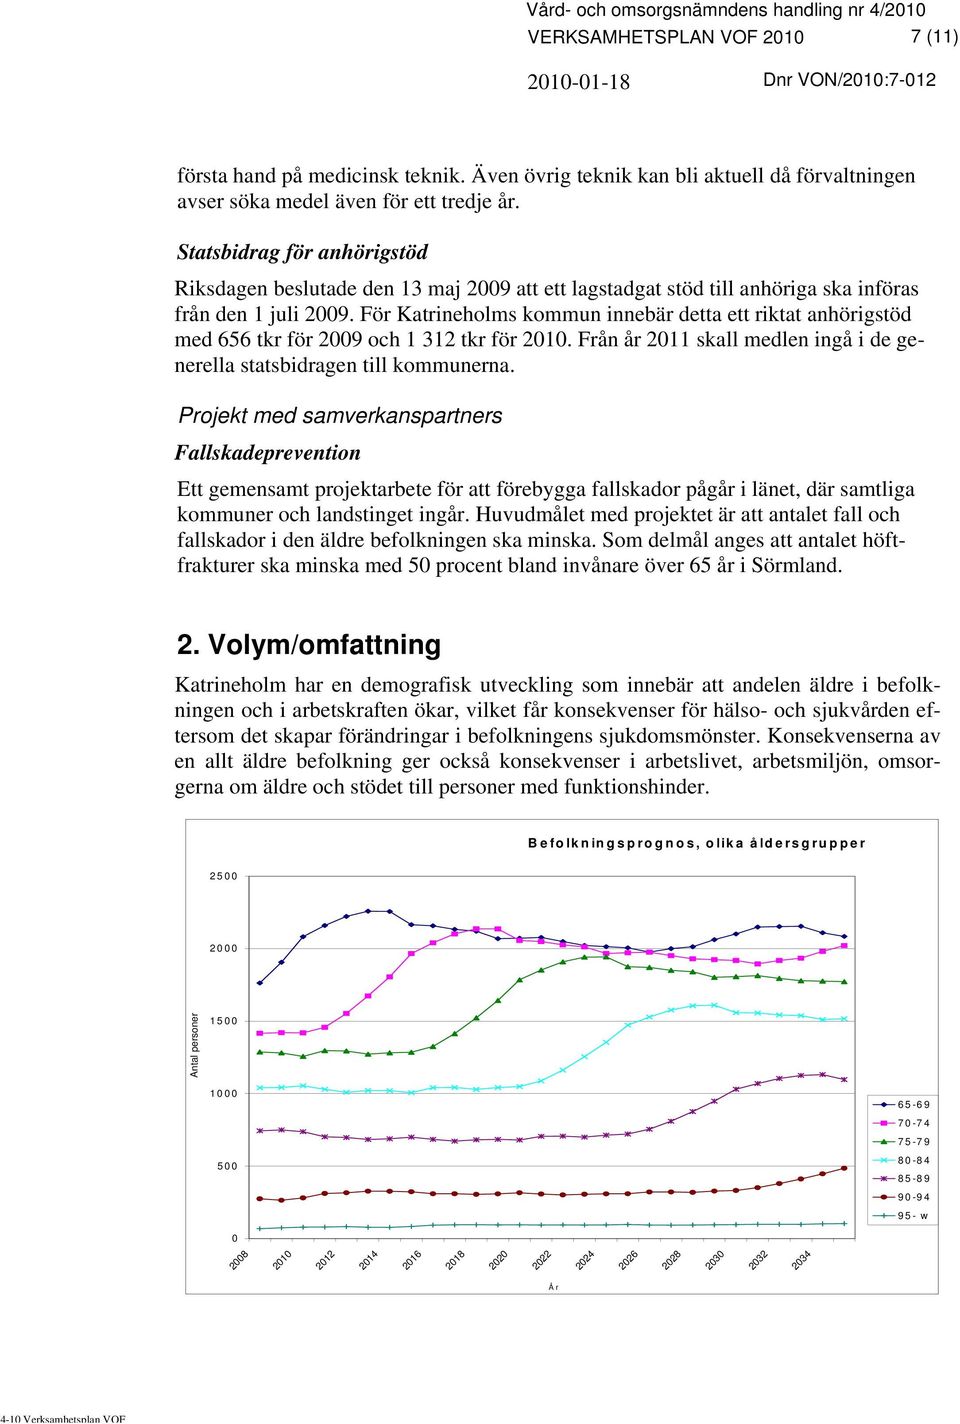 För Katrineholms kommun innebär detta ett riktat anhörigstöd med 656 tkr för 2009 och 1 312 tkr för 2010. Från år 2011 skall medlen ingå i de generella statsbidragen till kommunerna.